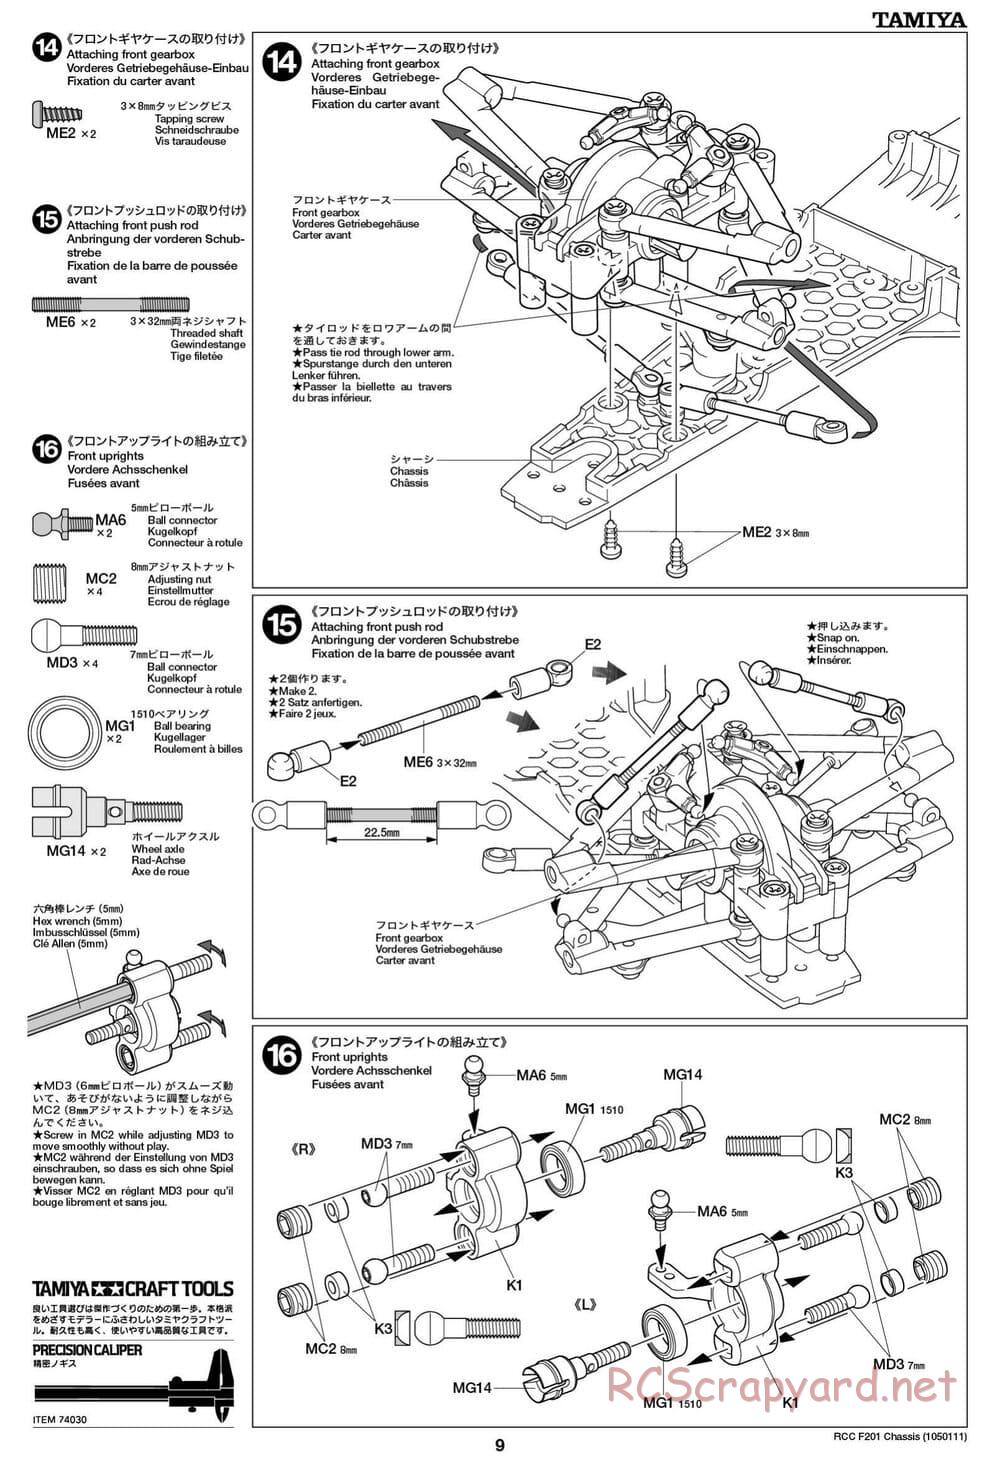 Tamiya - F201 Chassis - Manual - Page 9